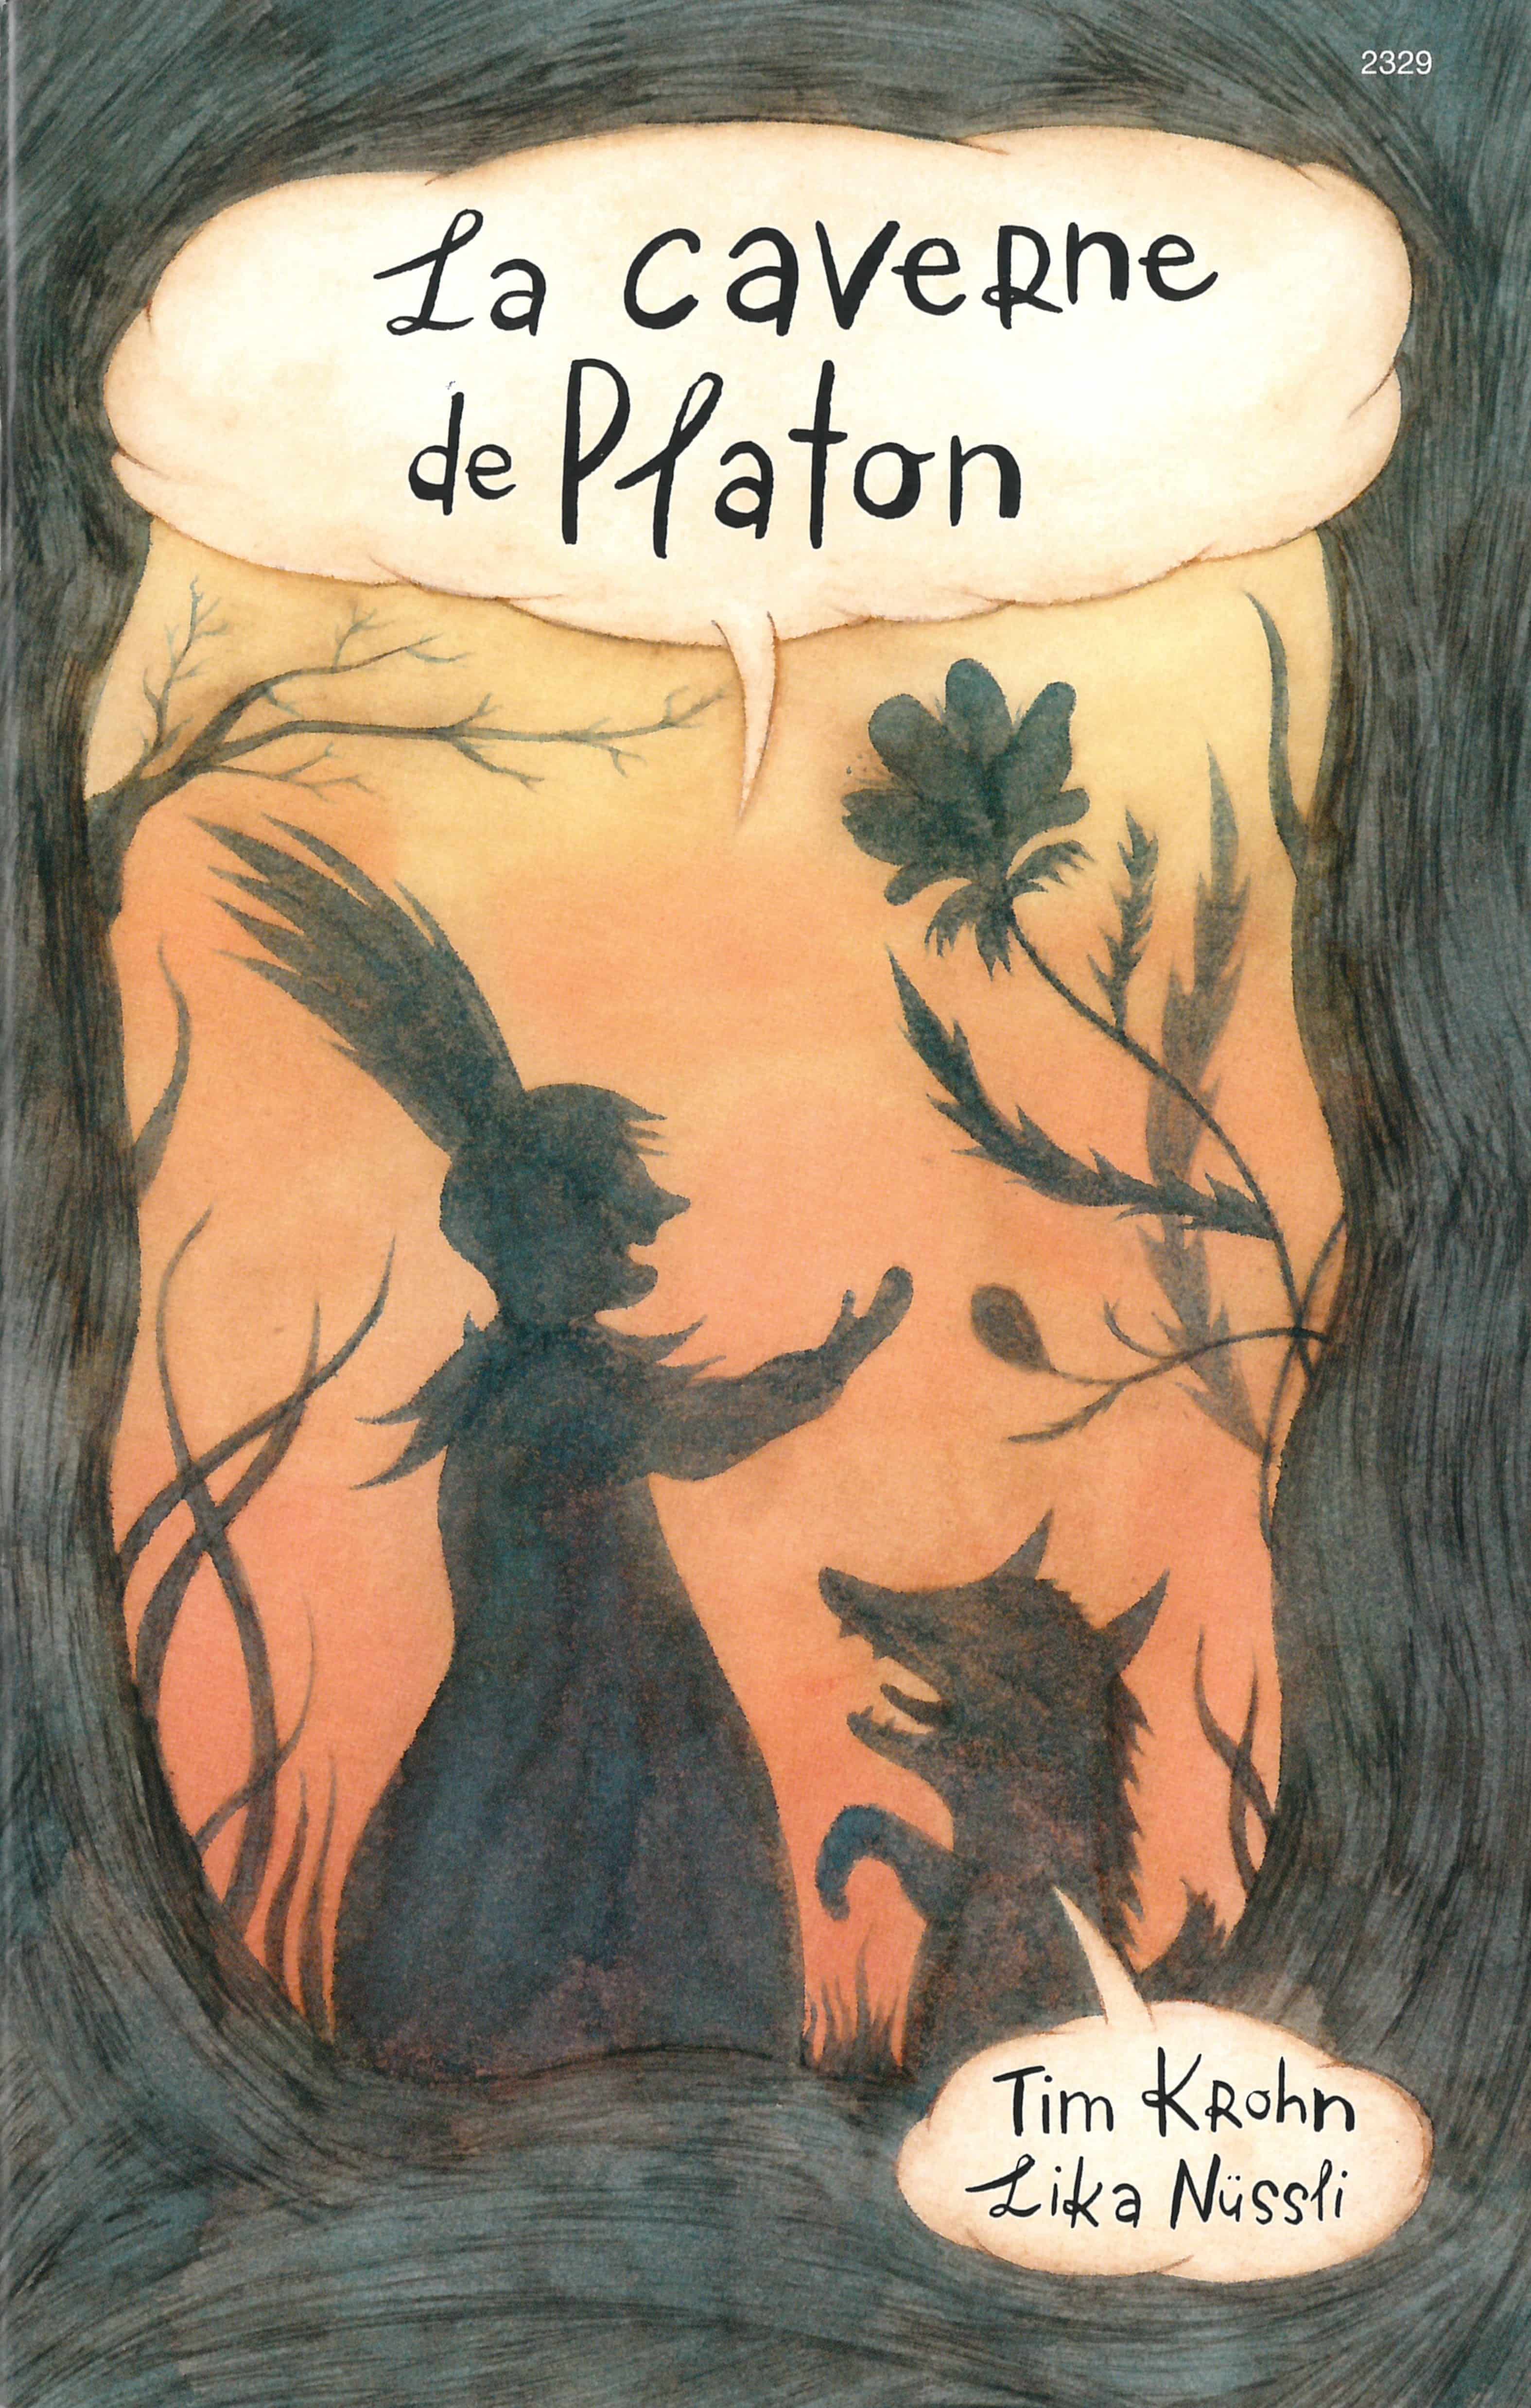 La caverne de Platon, un livre de Tim Krohn, illustré par Lika Nuessli, éditions de l'OSL, fables, philosophie